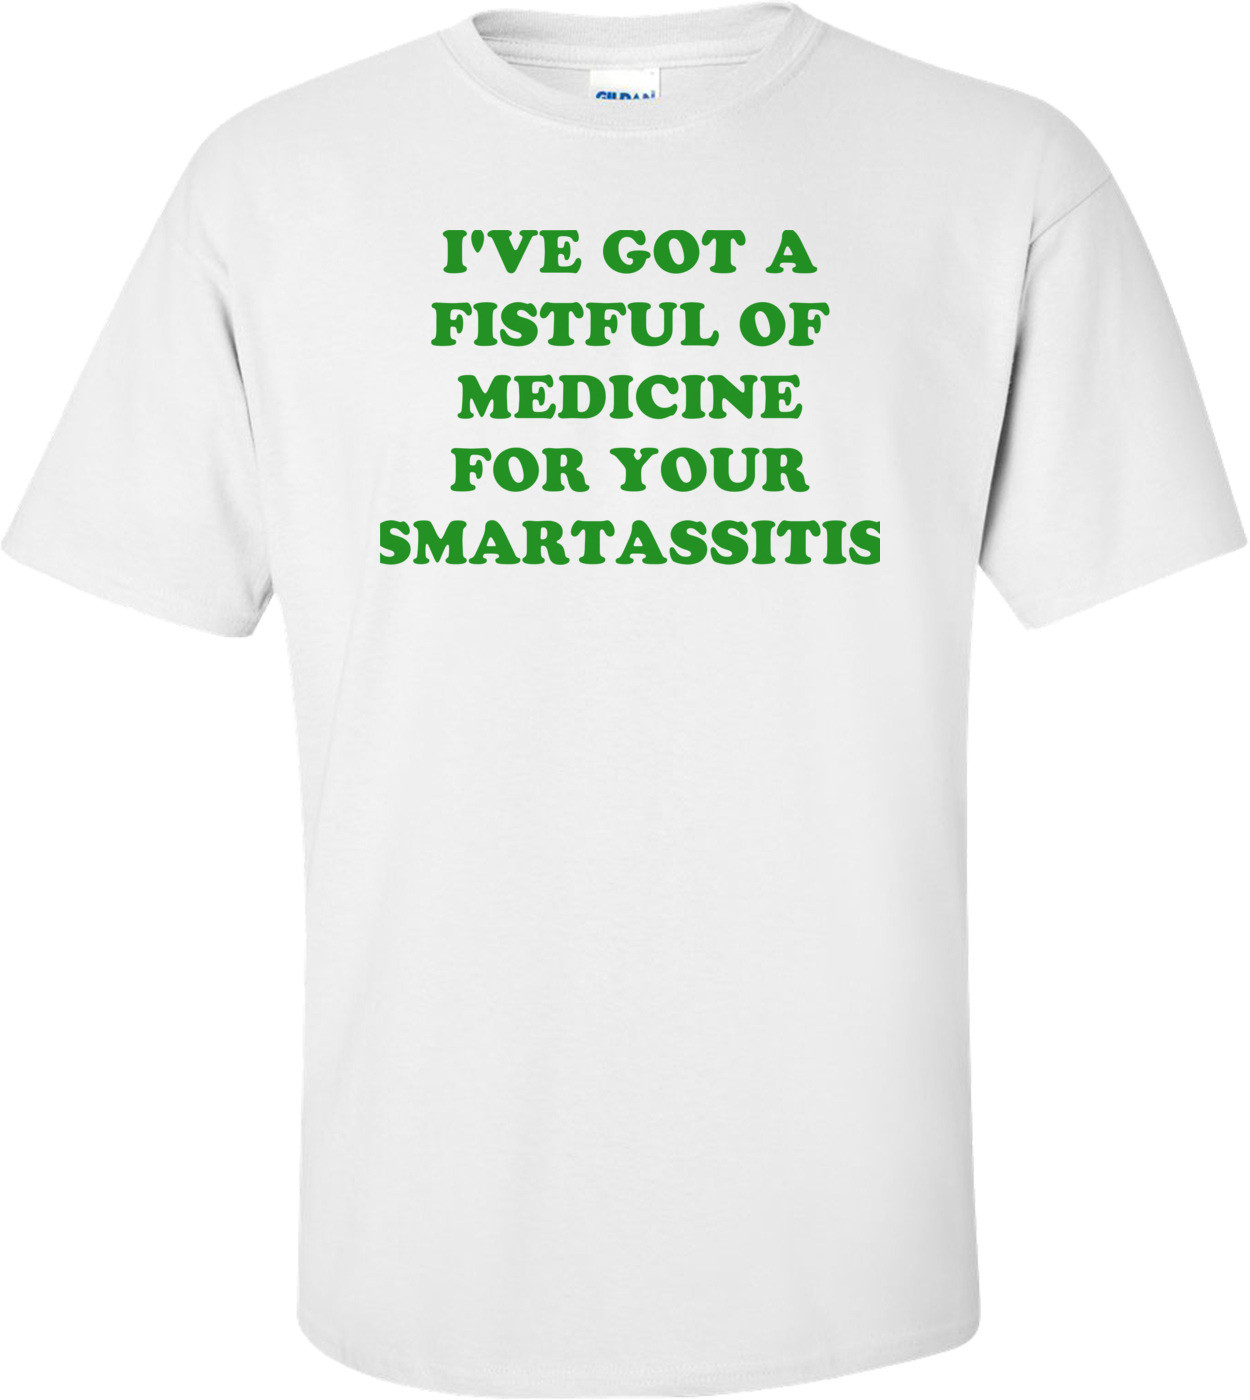 I'VE GOT A FISTFUL OF MEDICINE FOR YOUR SMARTASSITIS Shirt